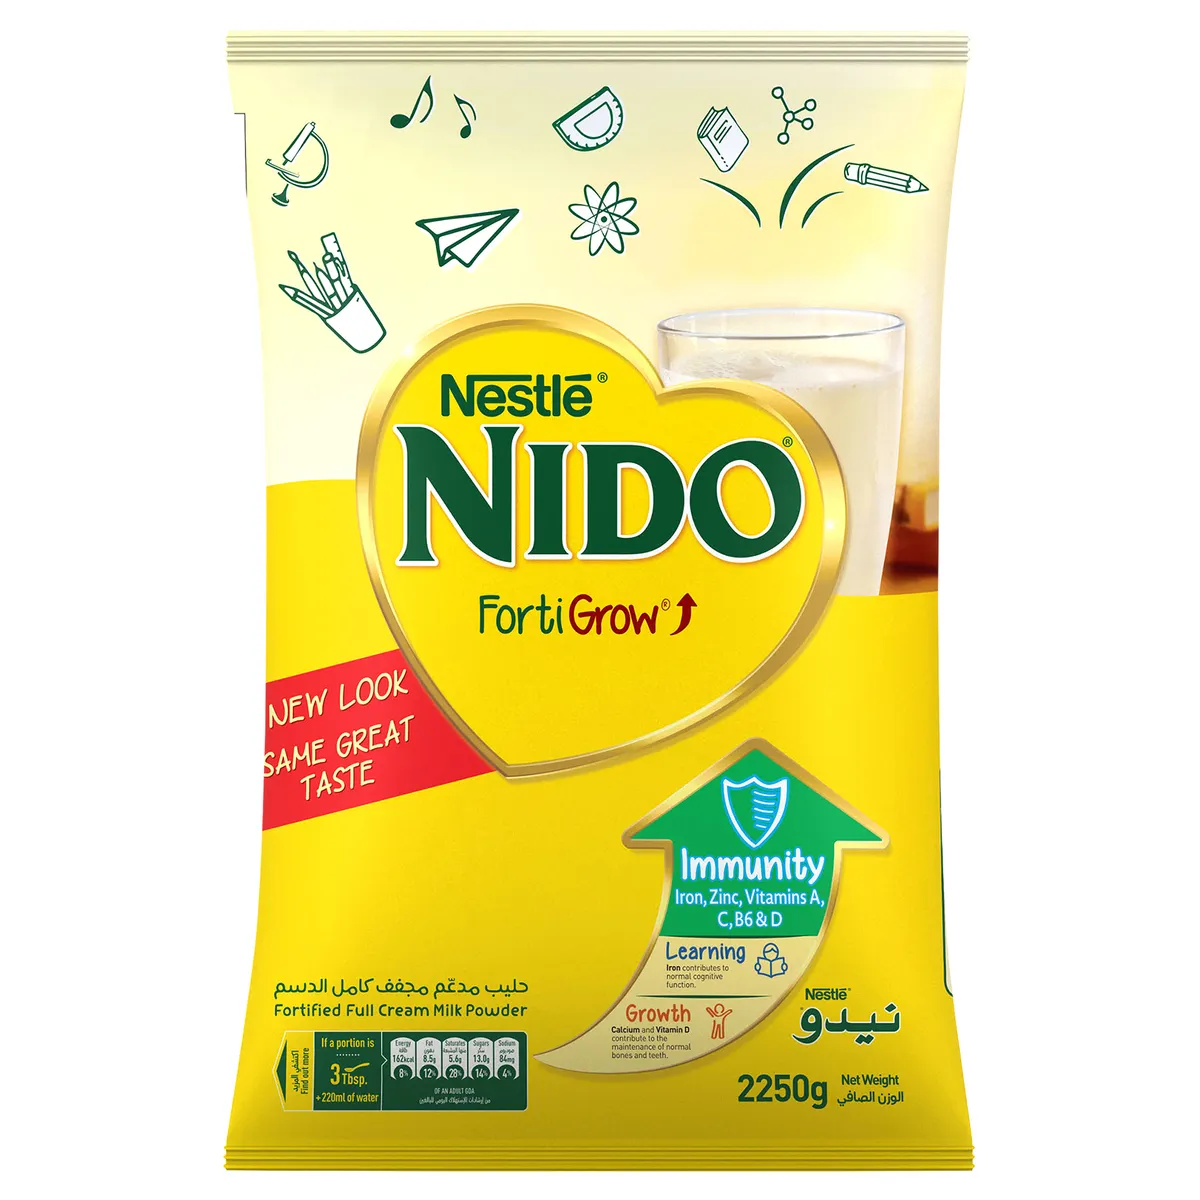 Nido-сухое молоко для продажи/Nido-молоко мгновенное цельное сухое молоко по оптовым ценам